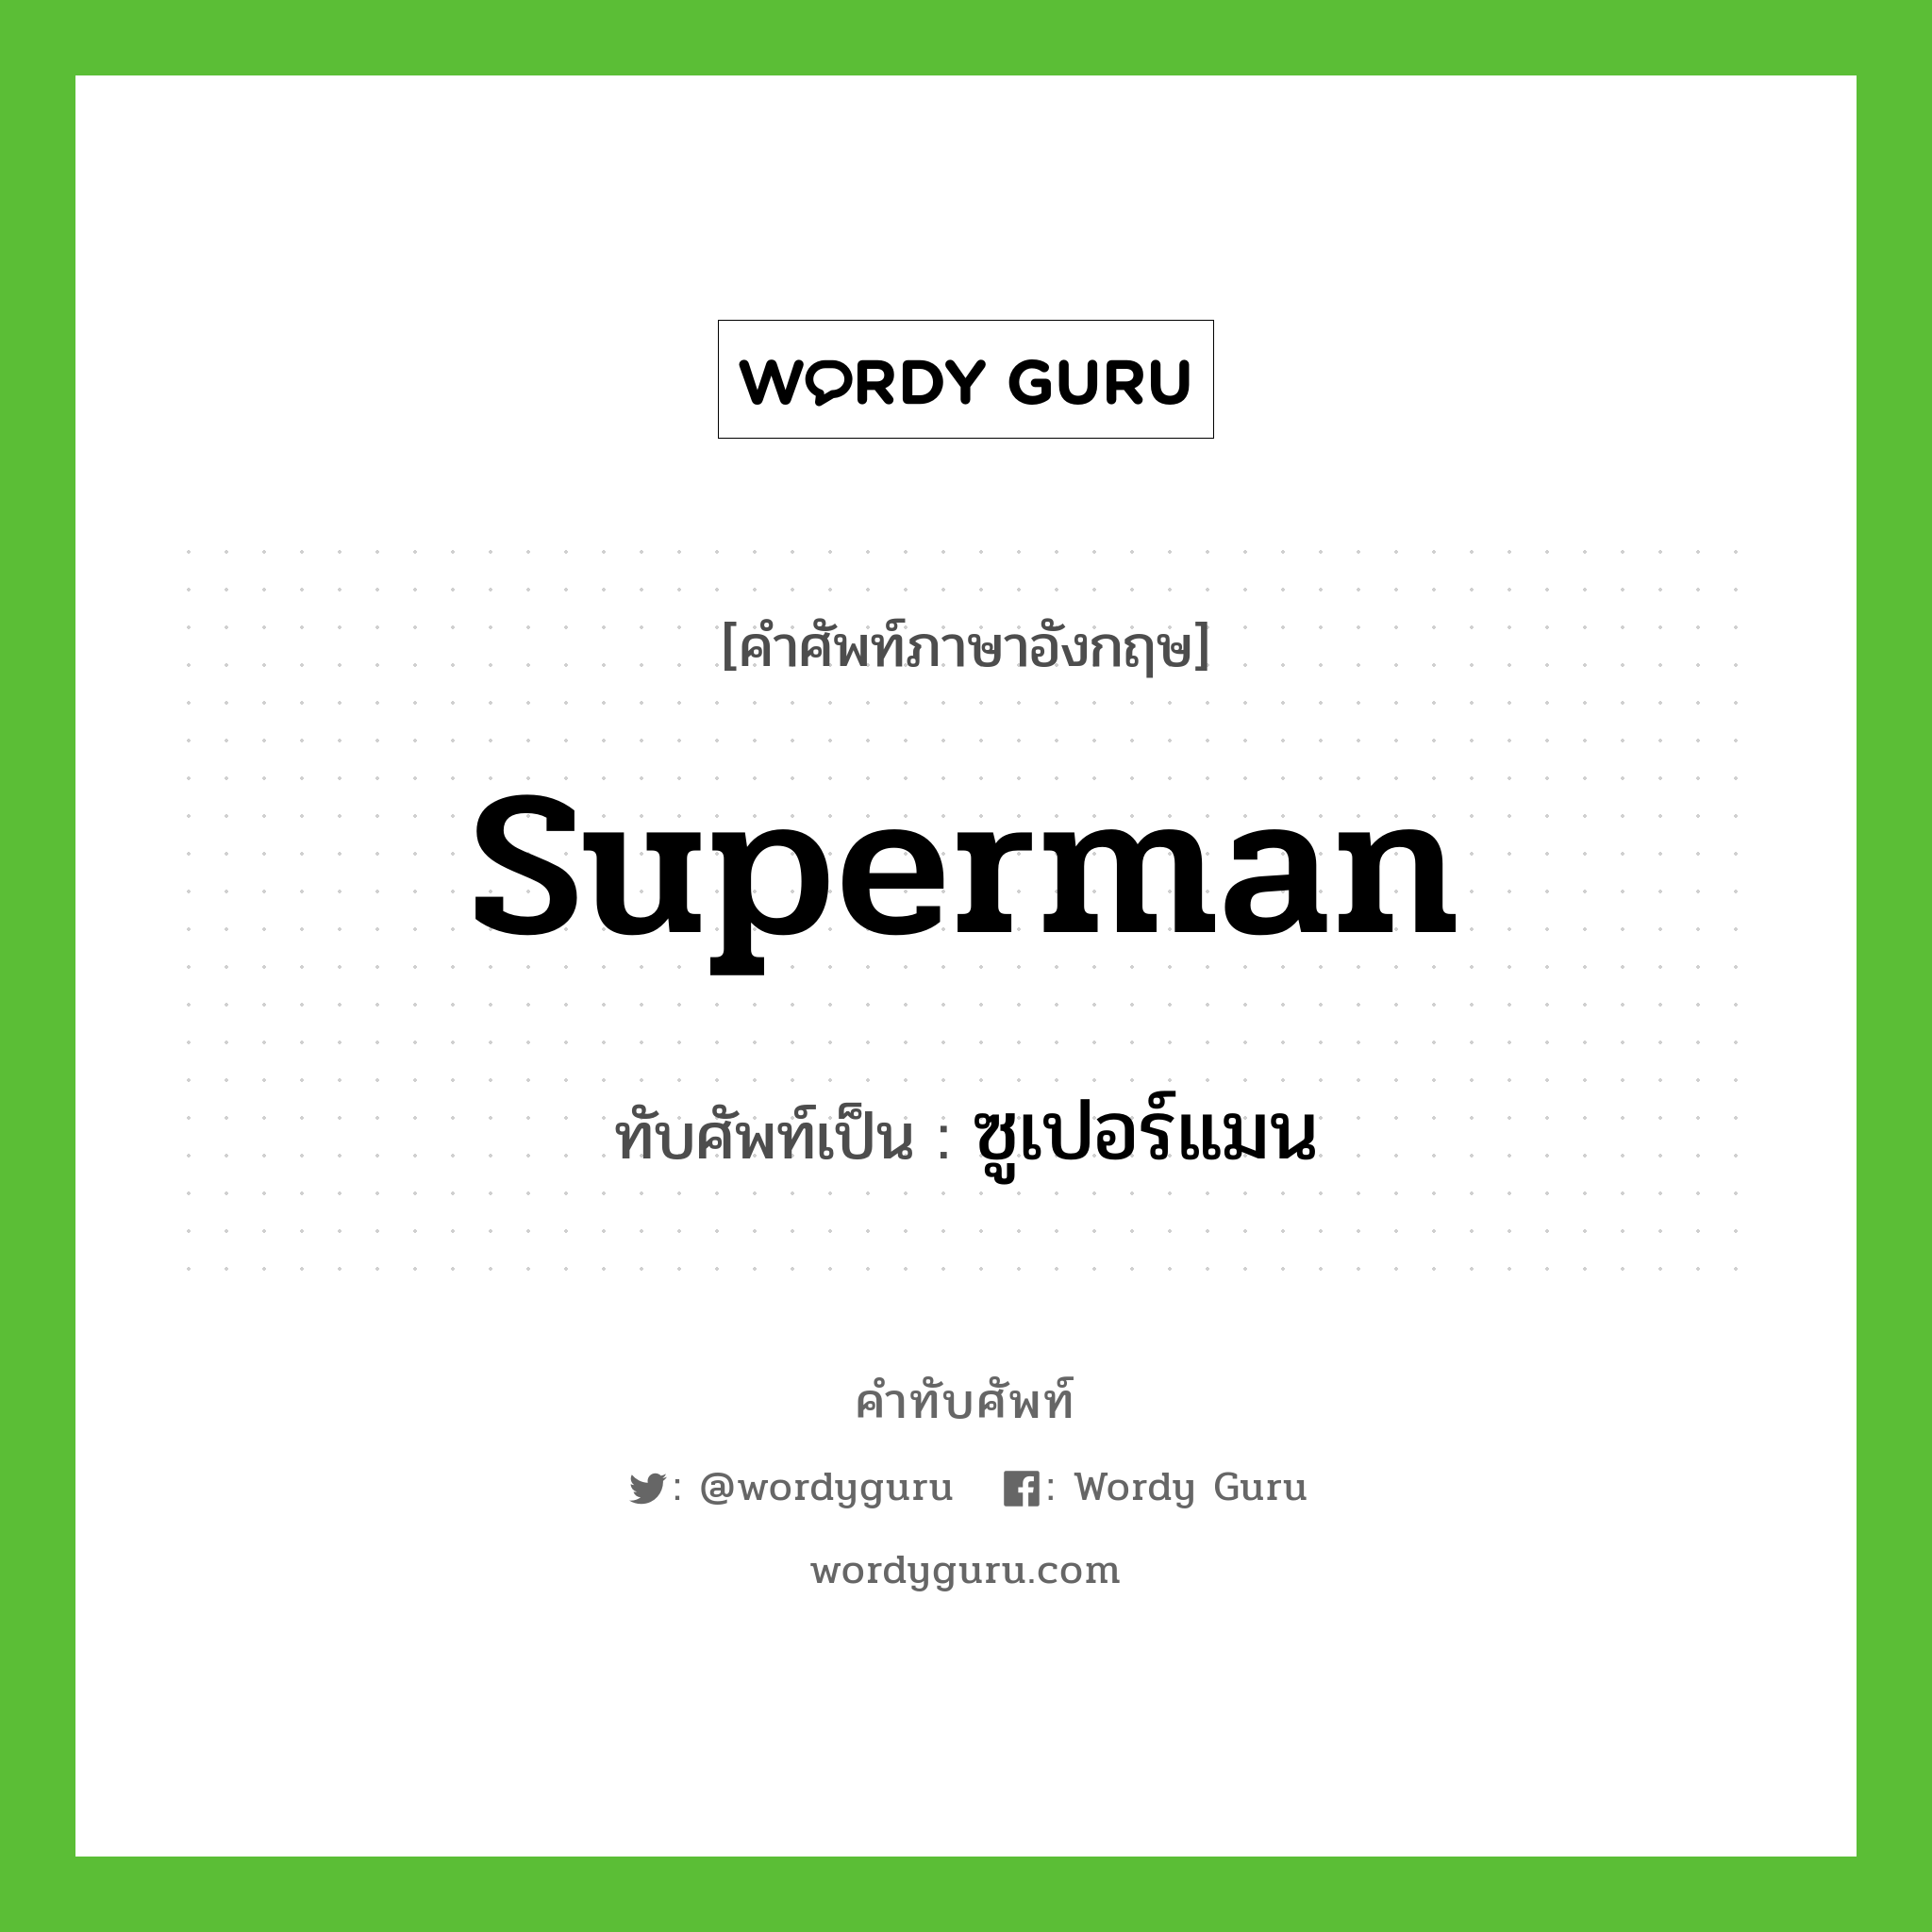 superman เขียนเป็นคำไทยว่าอะไร?, คำศัพท์ภาษาอังกฤษ superman ทับศัพท์เป็น ซูเปอร์แมน